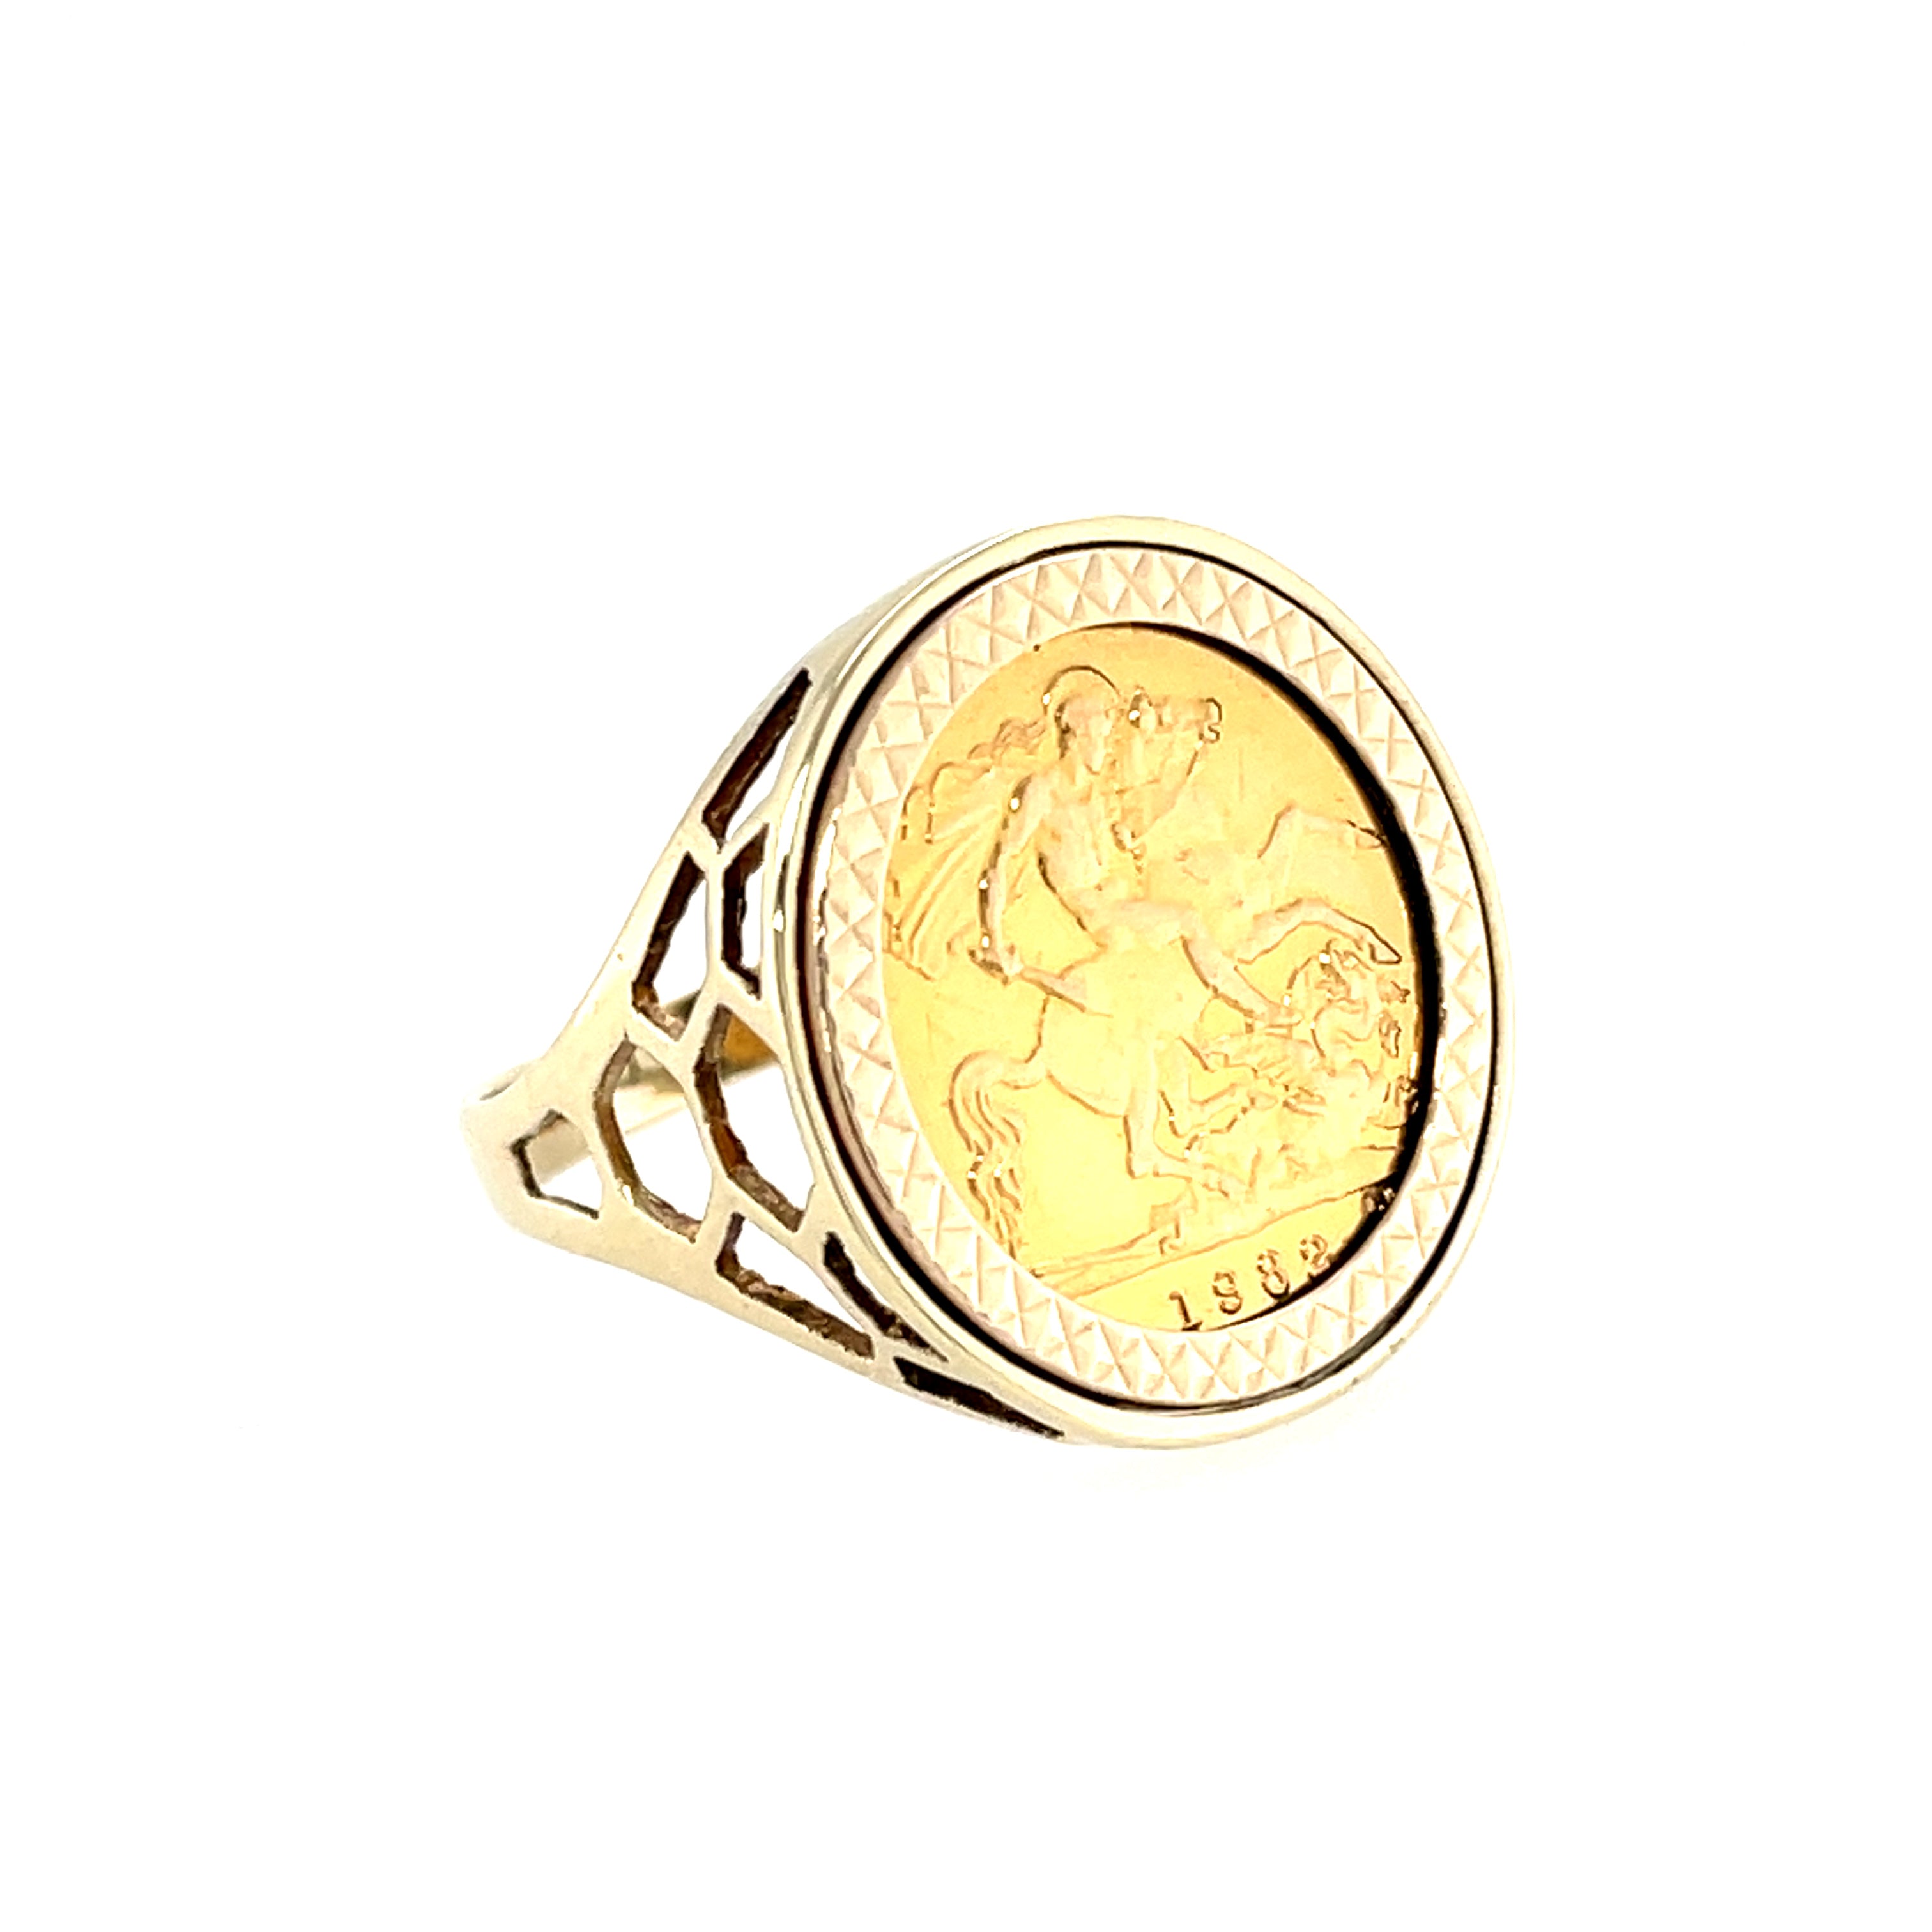 1982 Elizabeth II Half Sovereign Ring Size U 1/2 SOLD